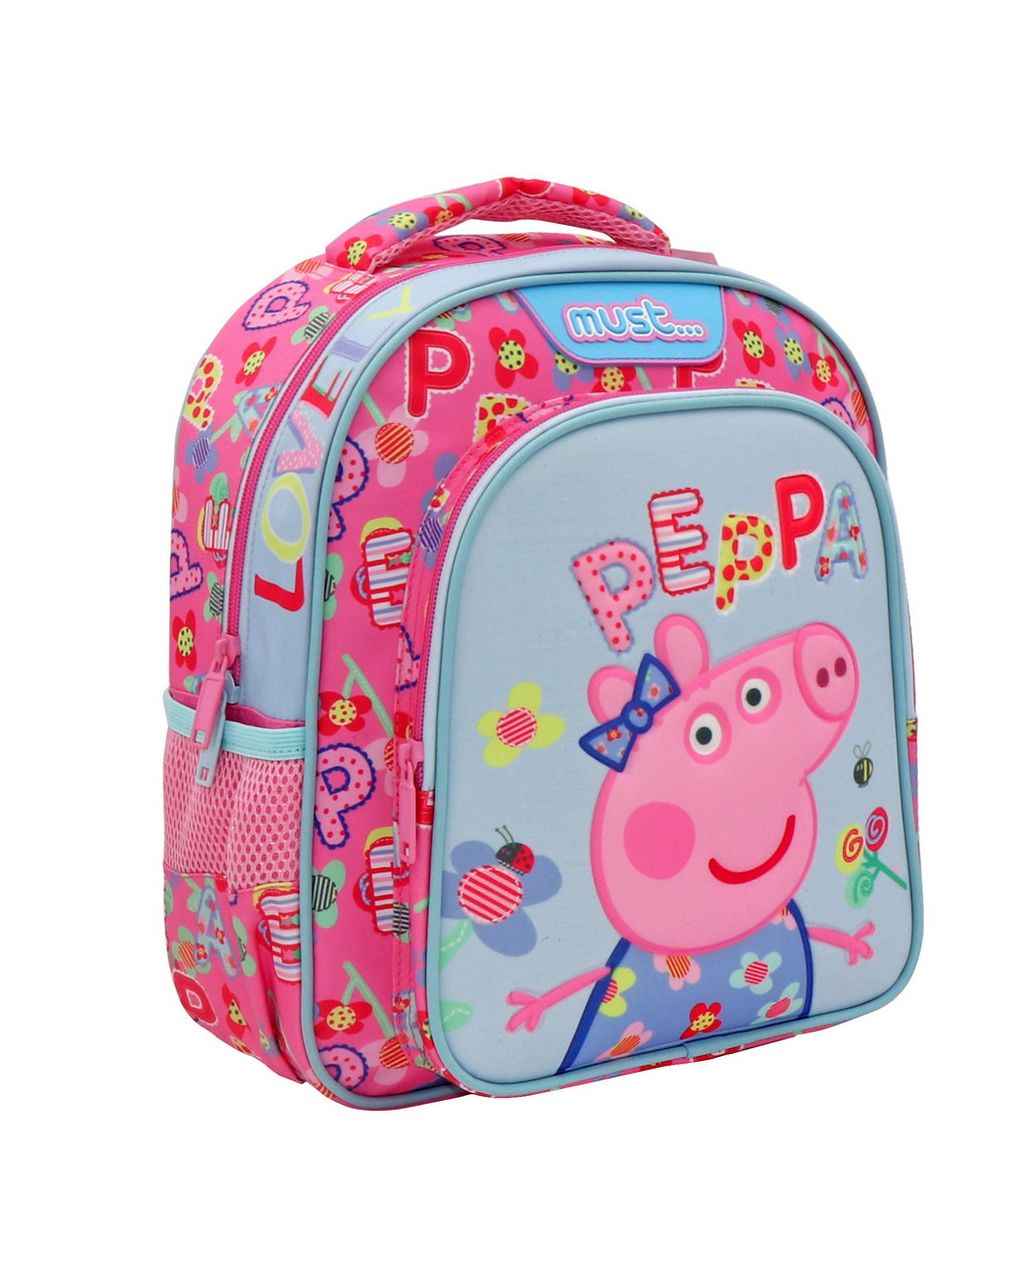 σχολική τσάντα πλάτης νηπίου peppa pig lovely must 2 θήκες  000482736 - must